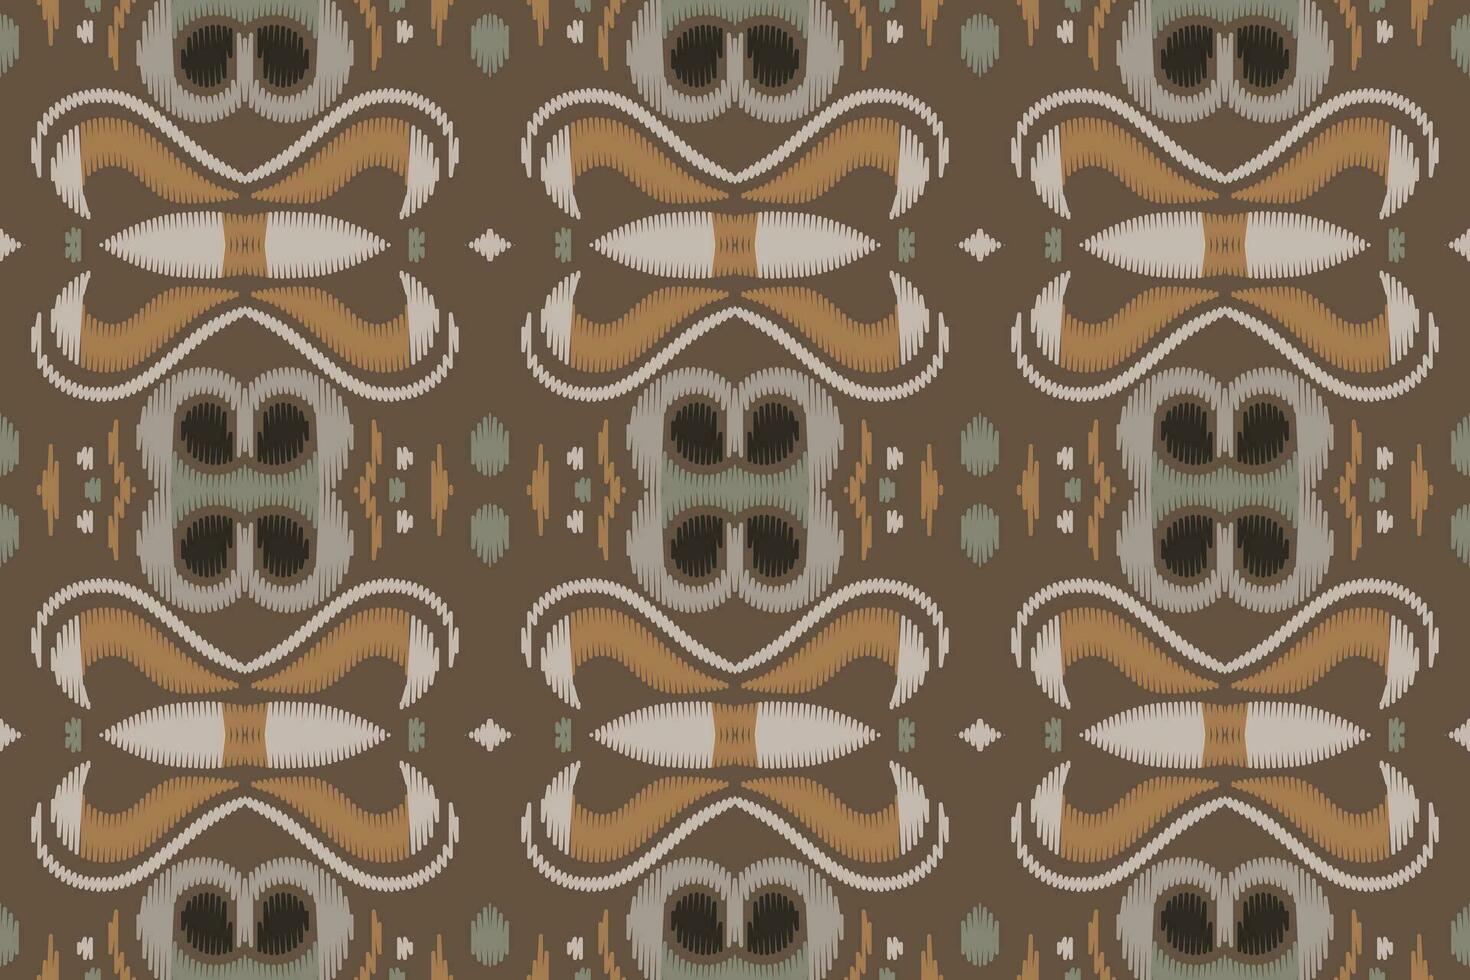 motiv ikat paisley broderi bakgrund. ikat design geometrisk etnisk orientalisk mönster traditionell.aztec stil abstrakt vektor illustration.design för textur, tyg, kläder, inslagning, sarong.